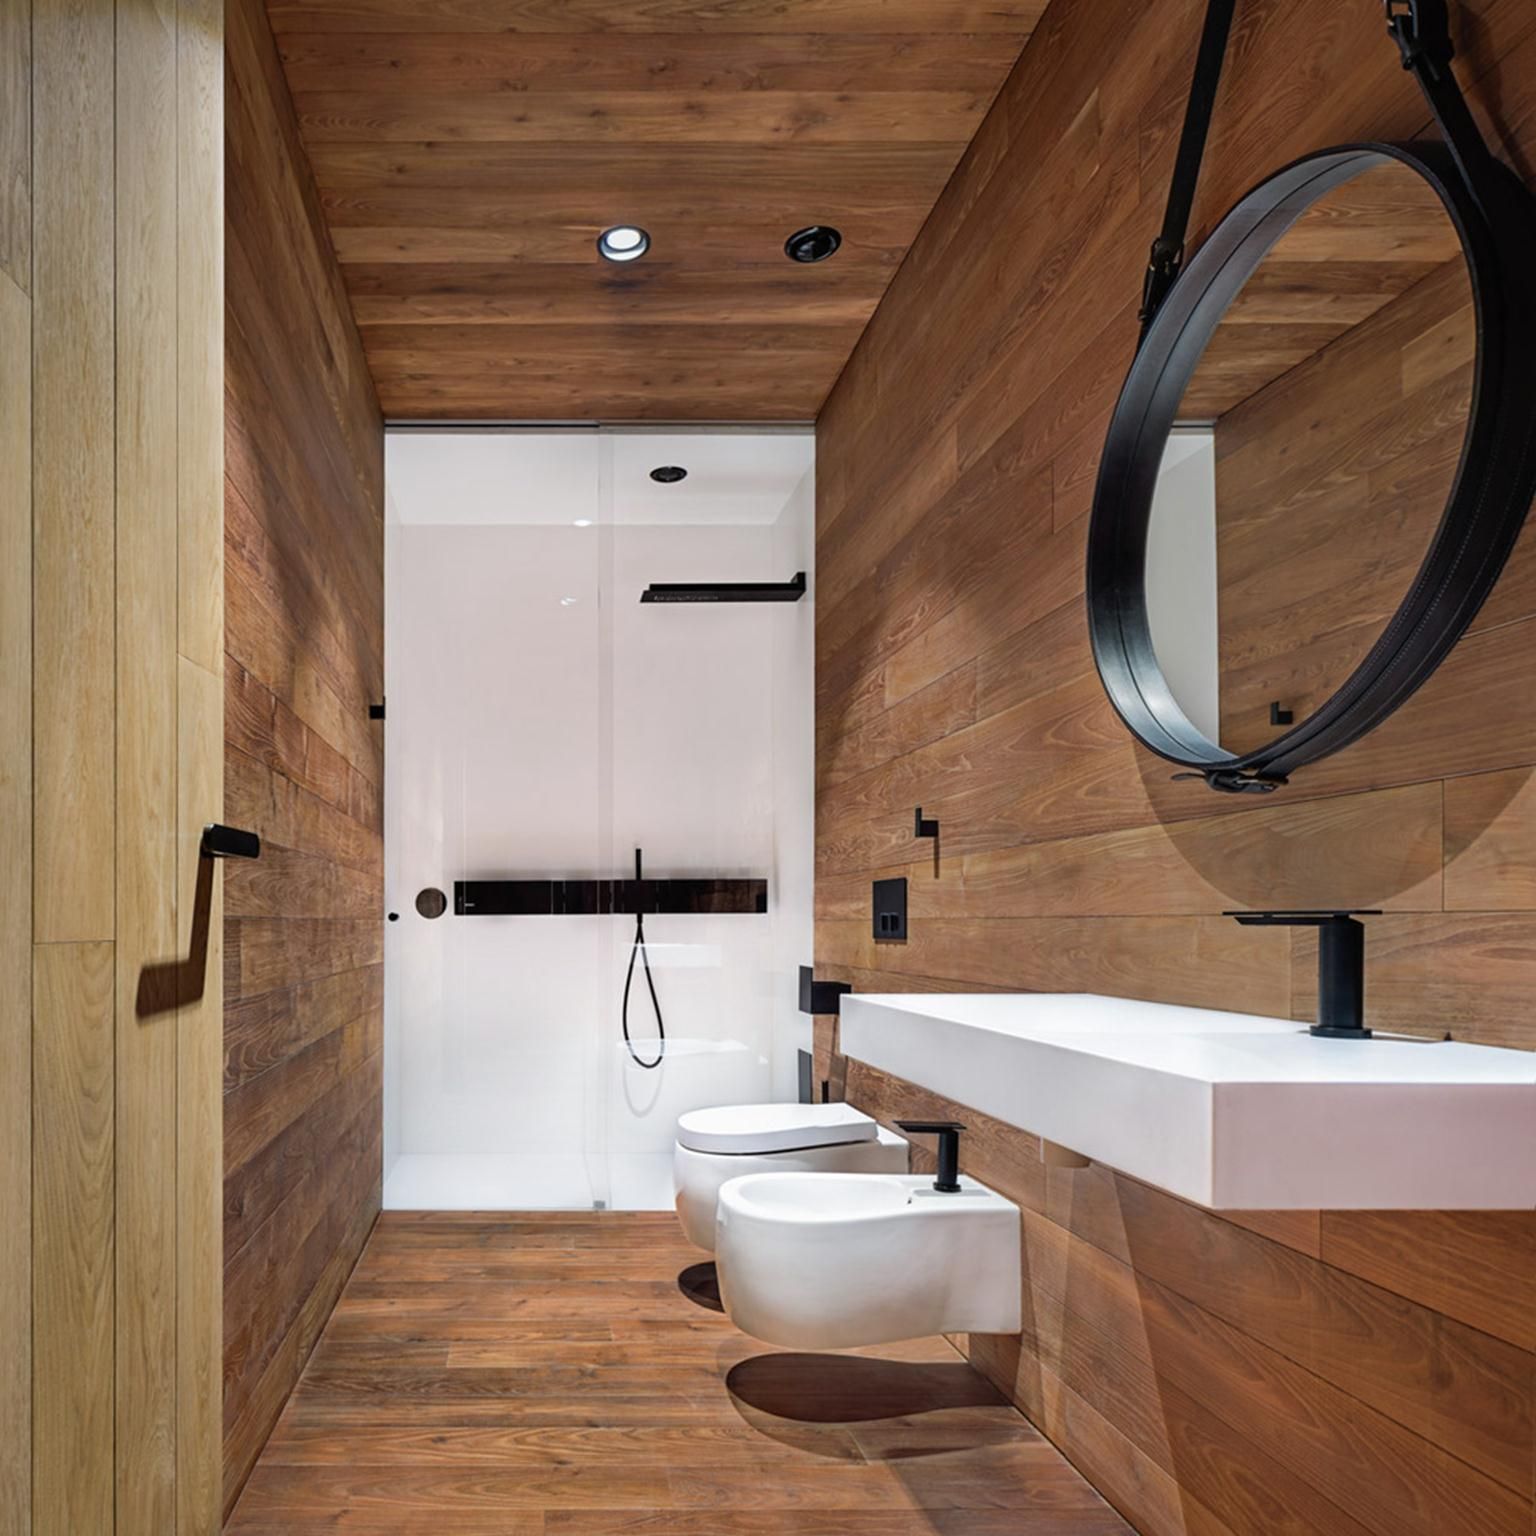 Nhà vệ sinh được thiết kế hiện đại.